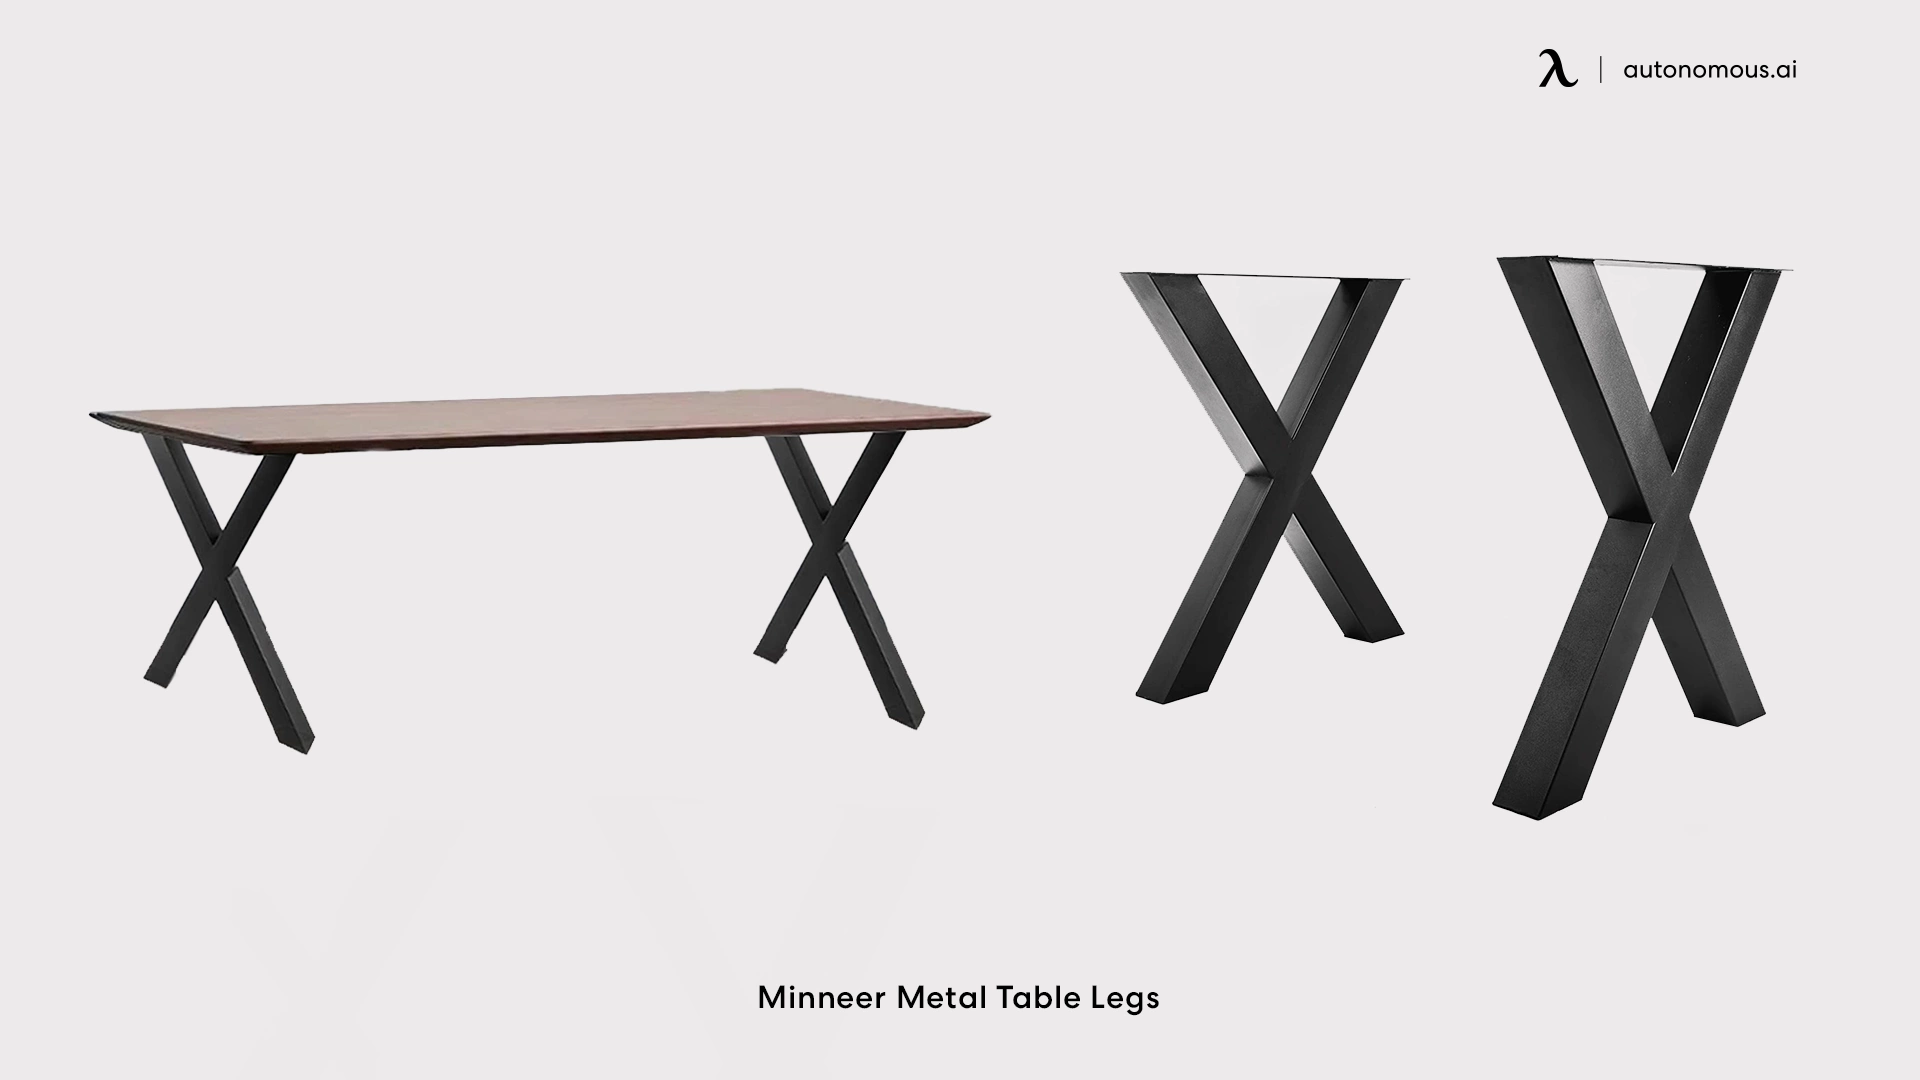 Minneer Metal Table Legs